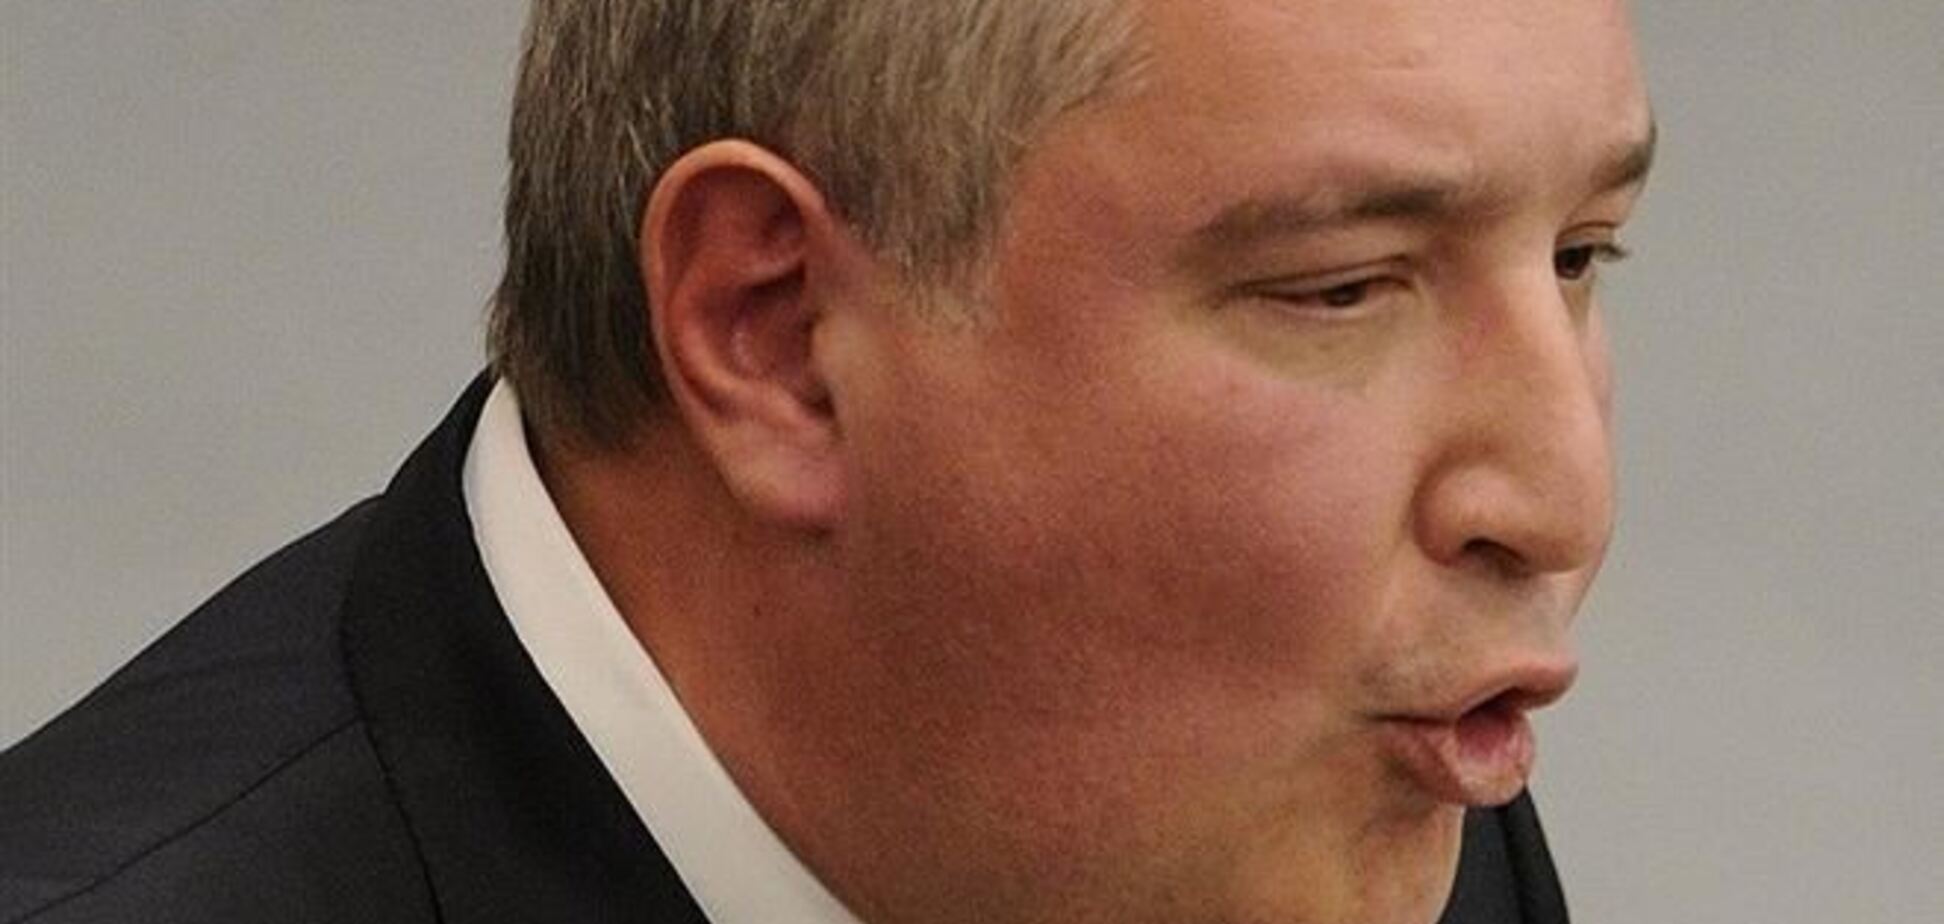 Рогозин хочет расширить 'империю' за счет русских за рубежами РФ